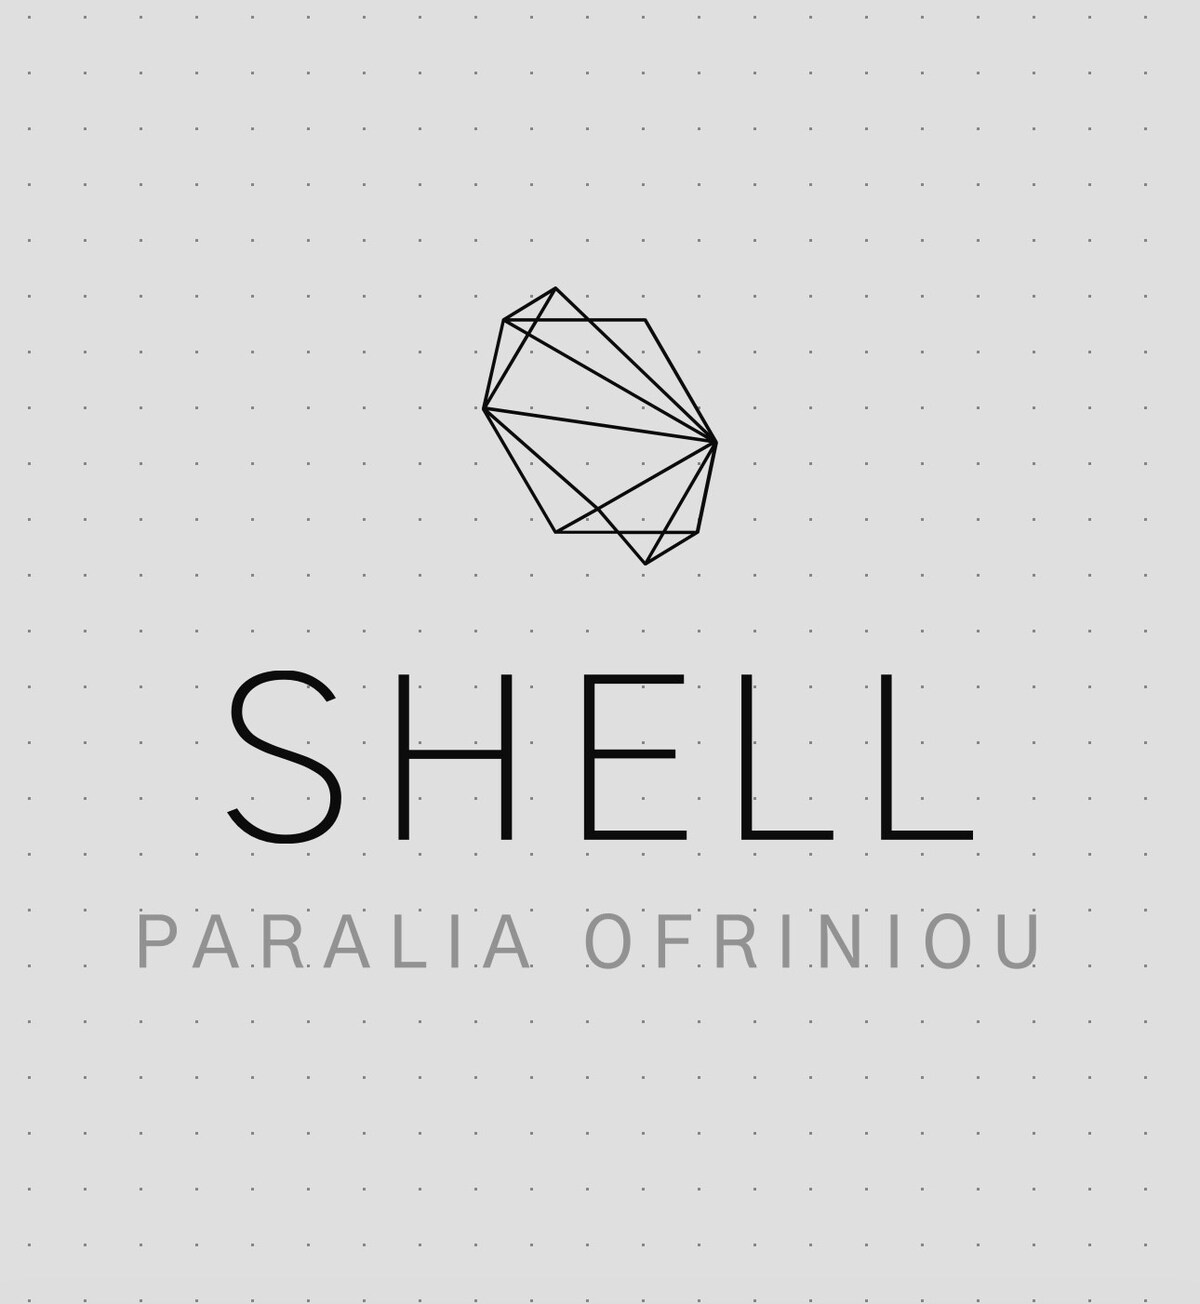 Shell-paralia orfiniou